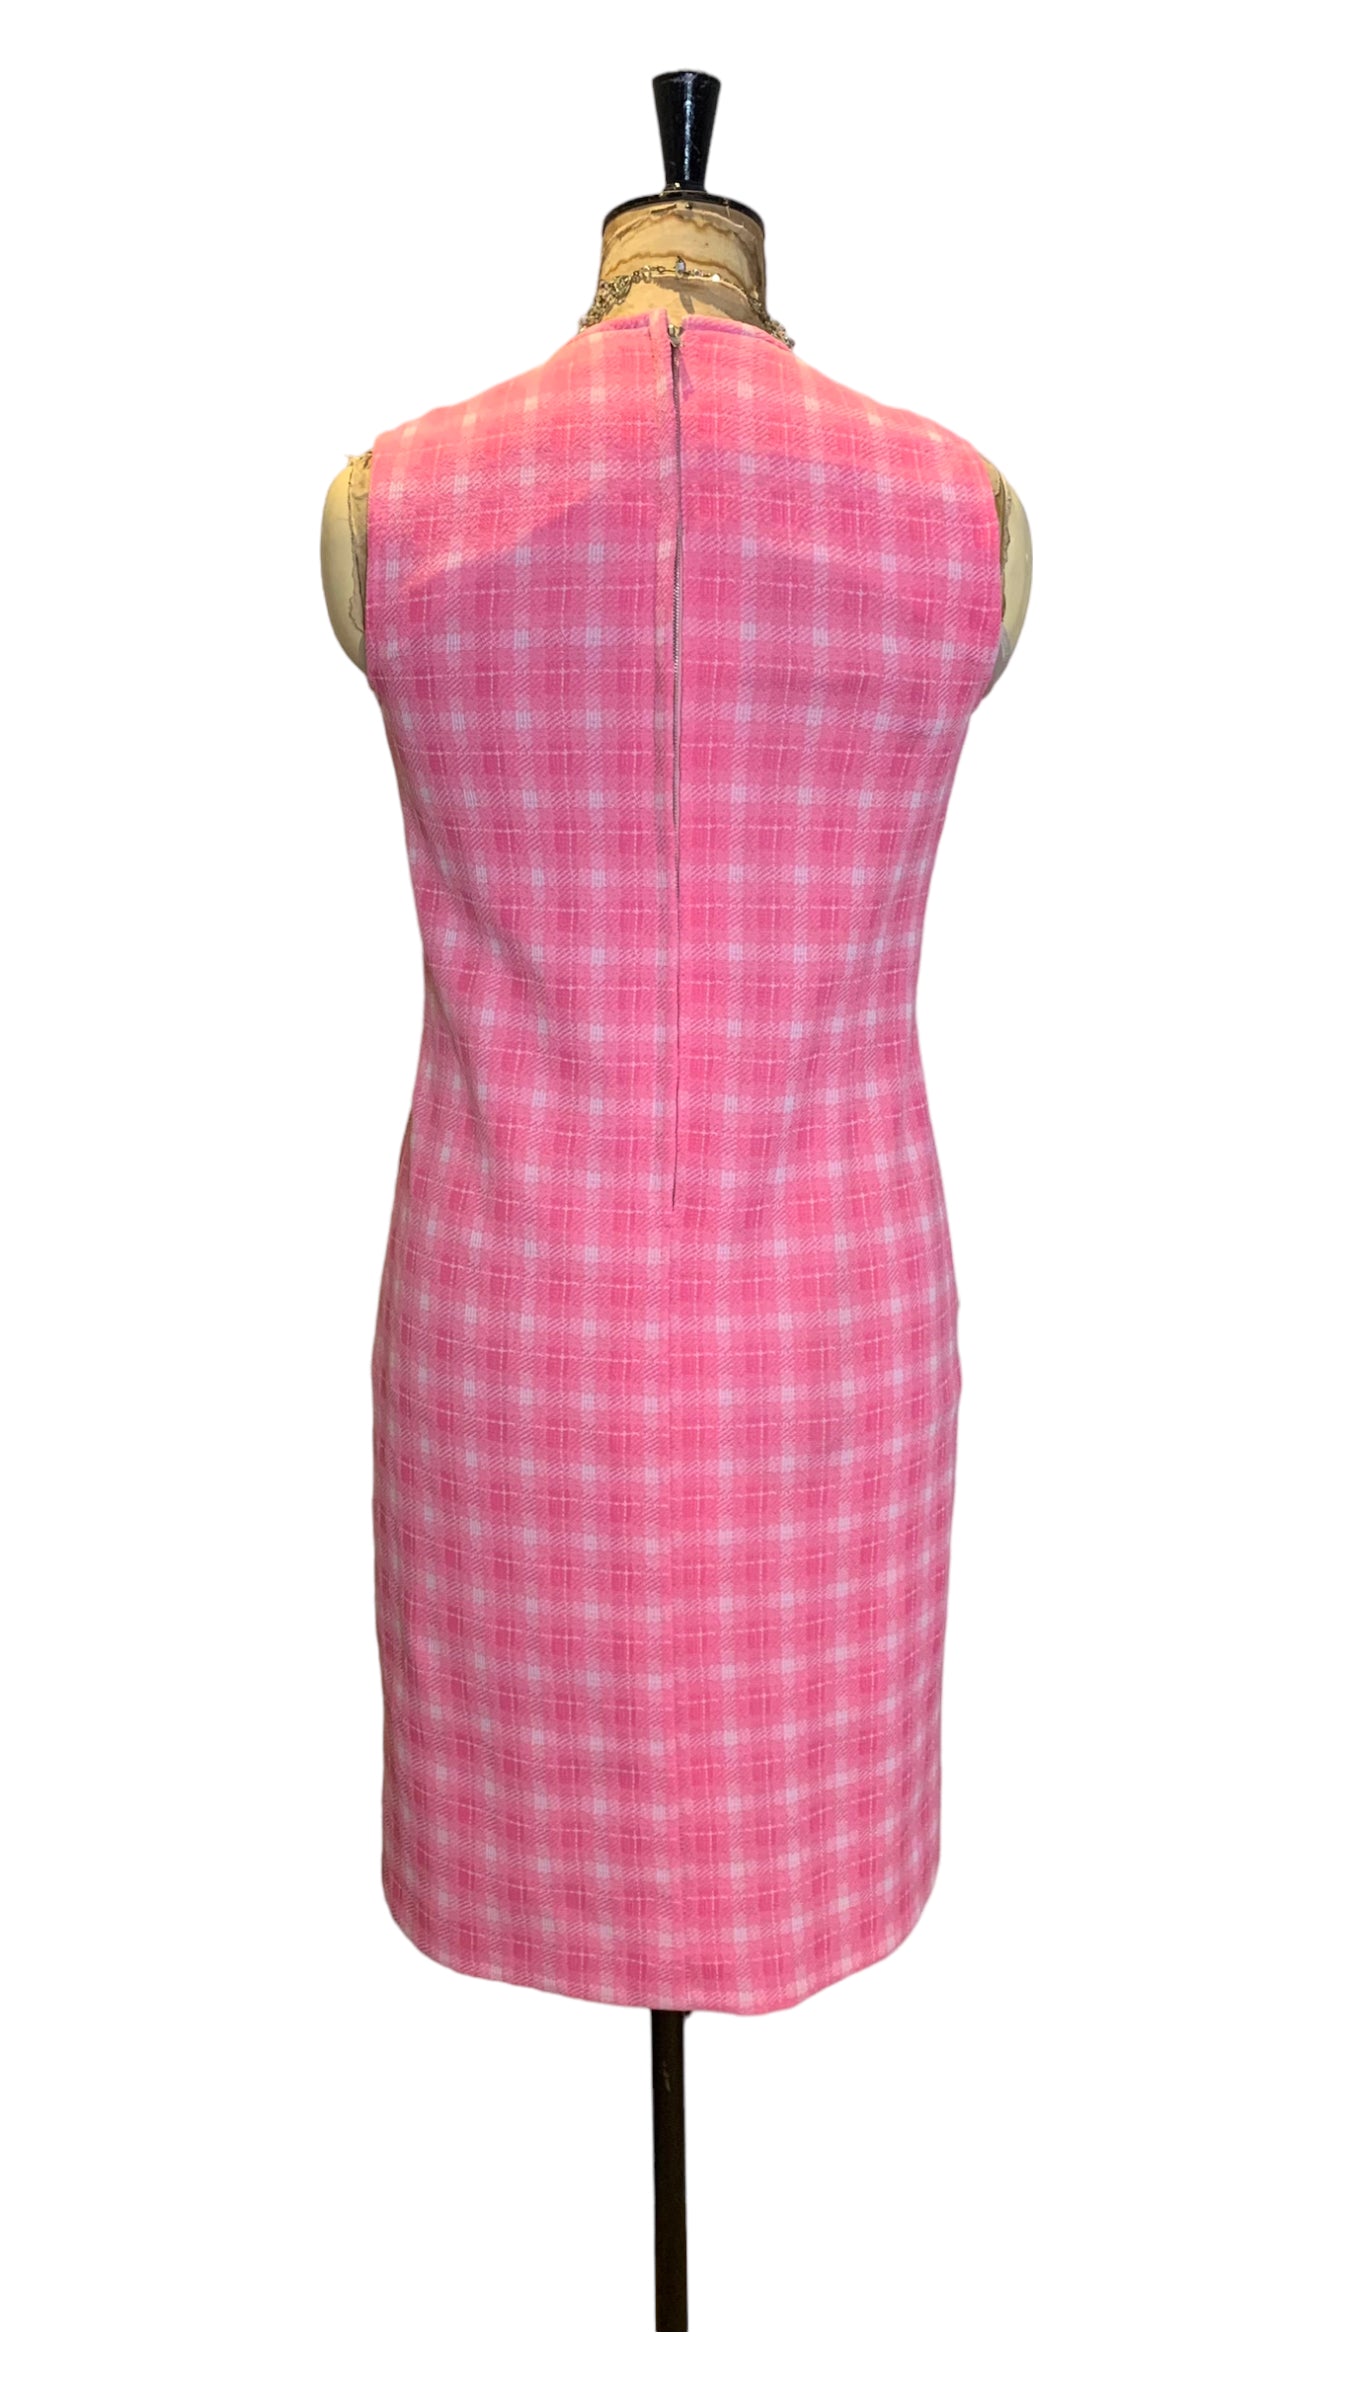 60s Pink Sleeveless Dress Size UK 10- 12